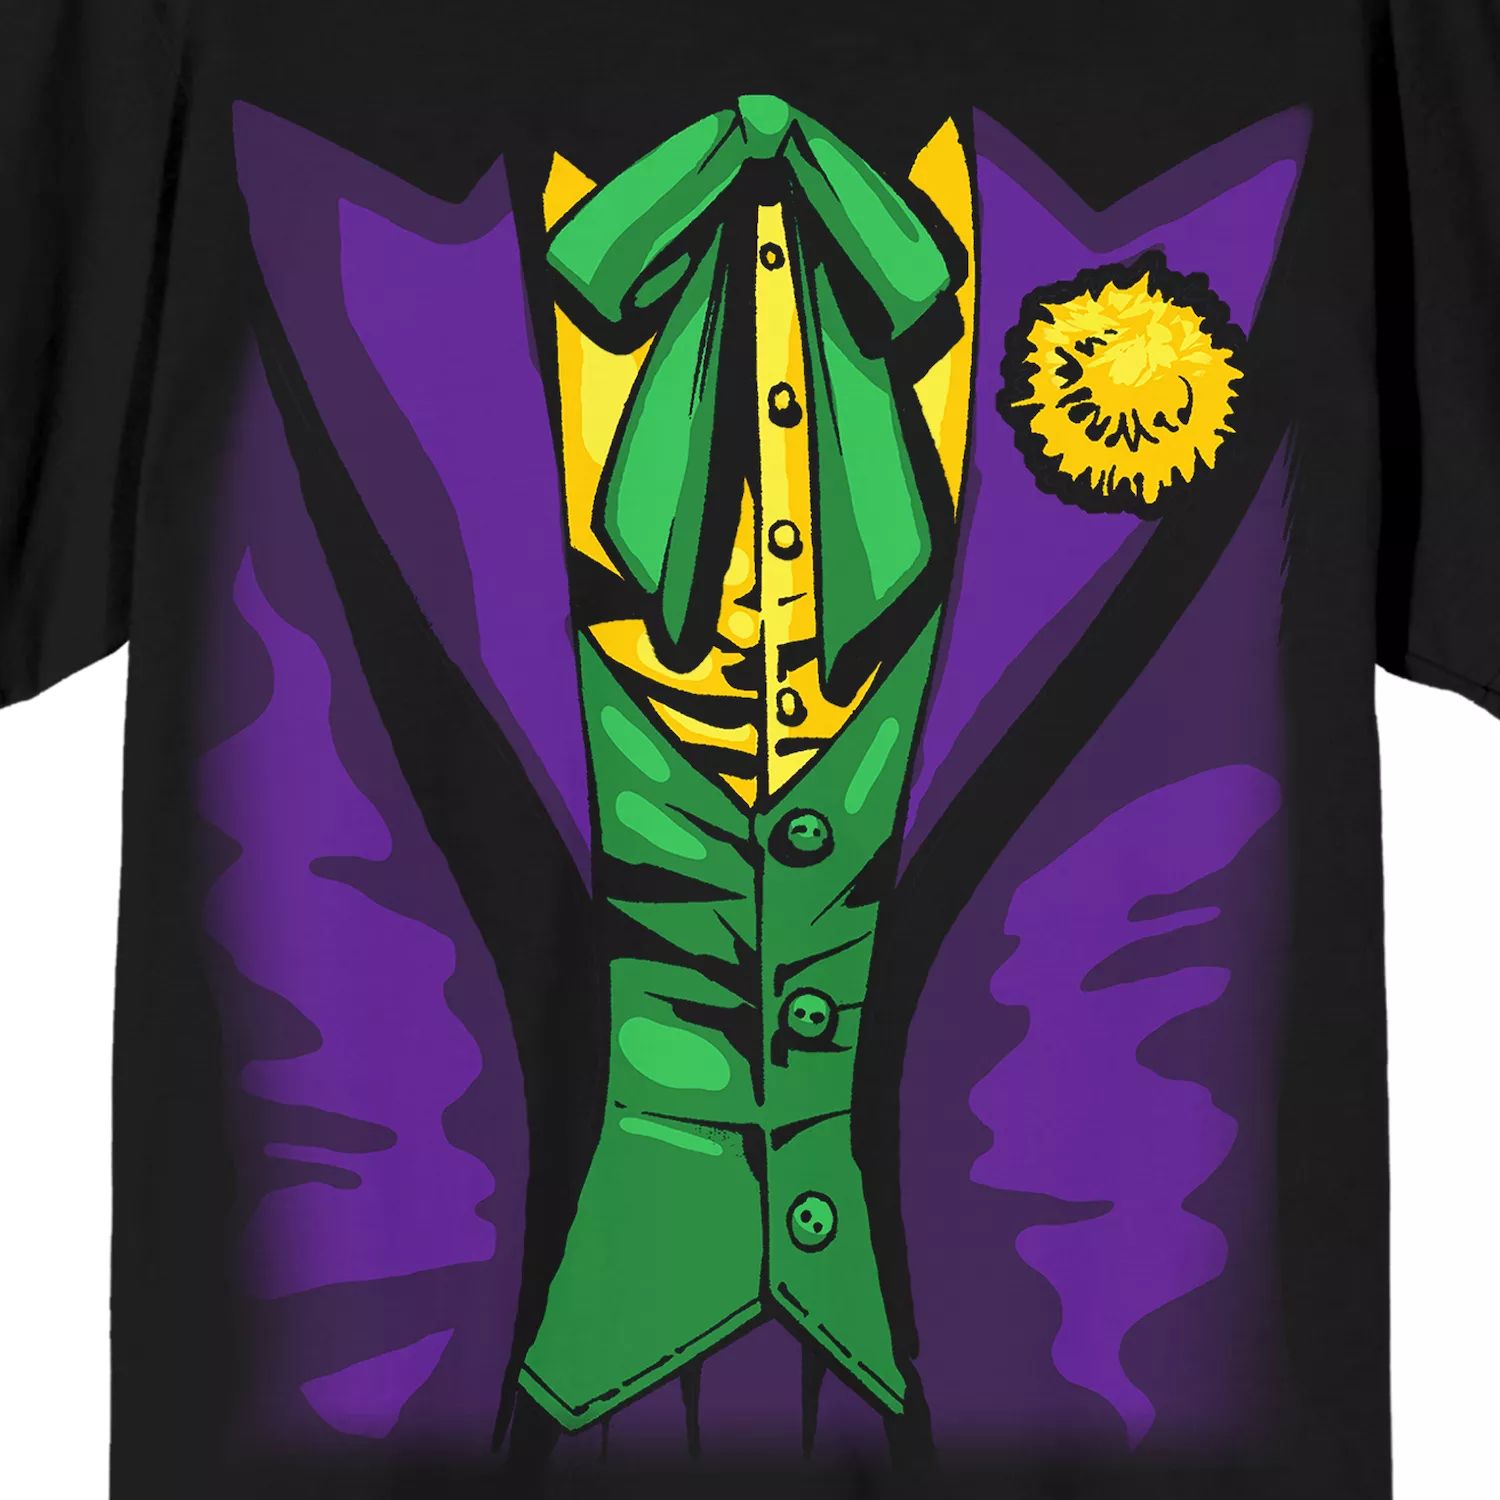 Мужская футболка DC Comics The Joker Licensed Character